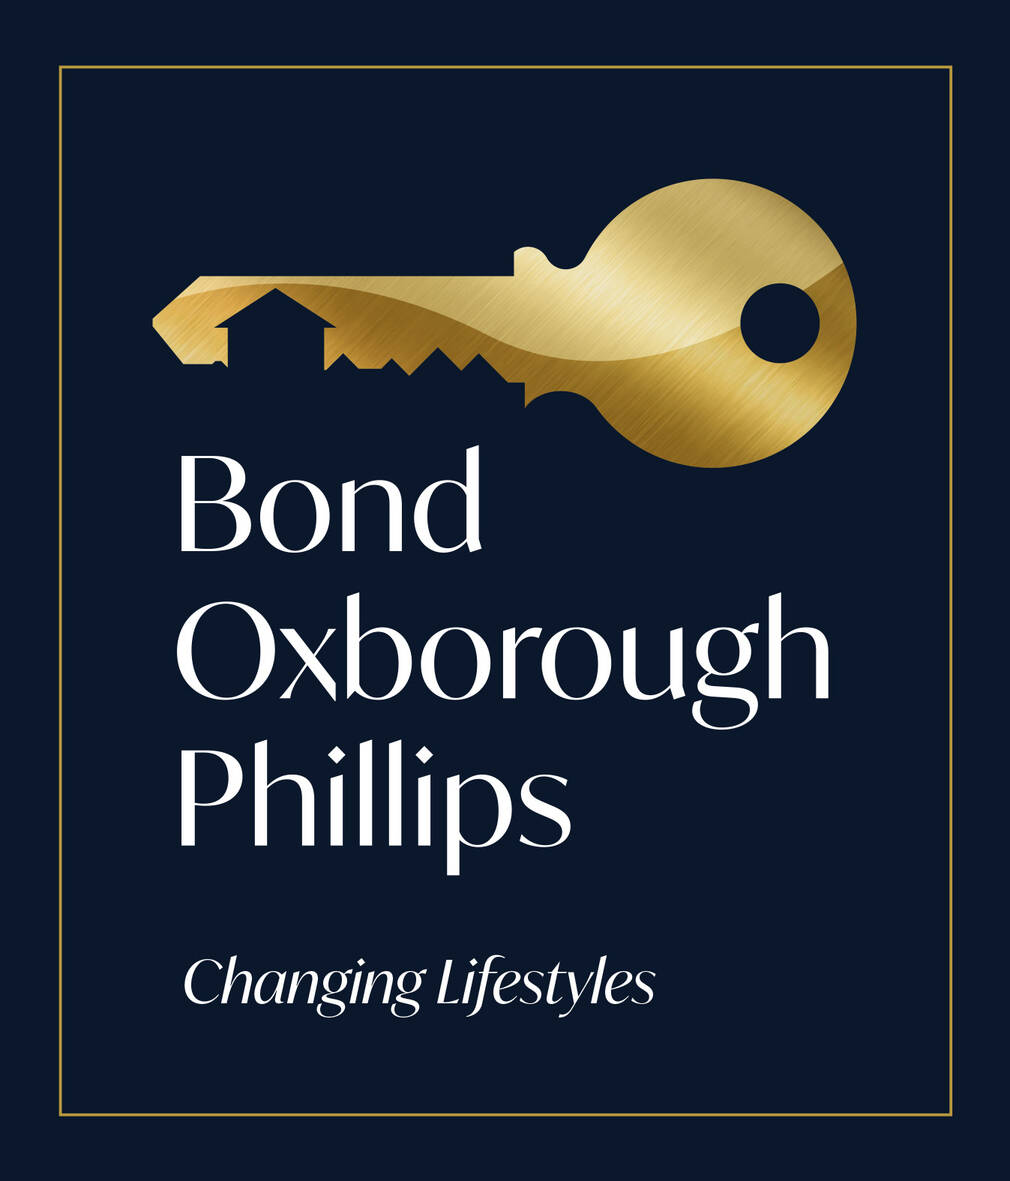 Bond Oxborough Phillips Okehampton